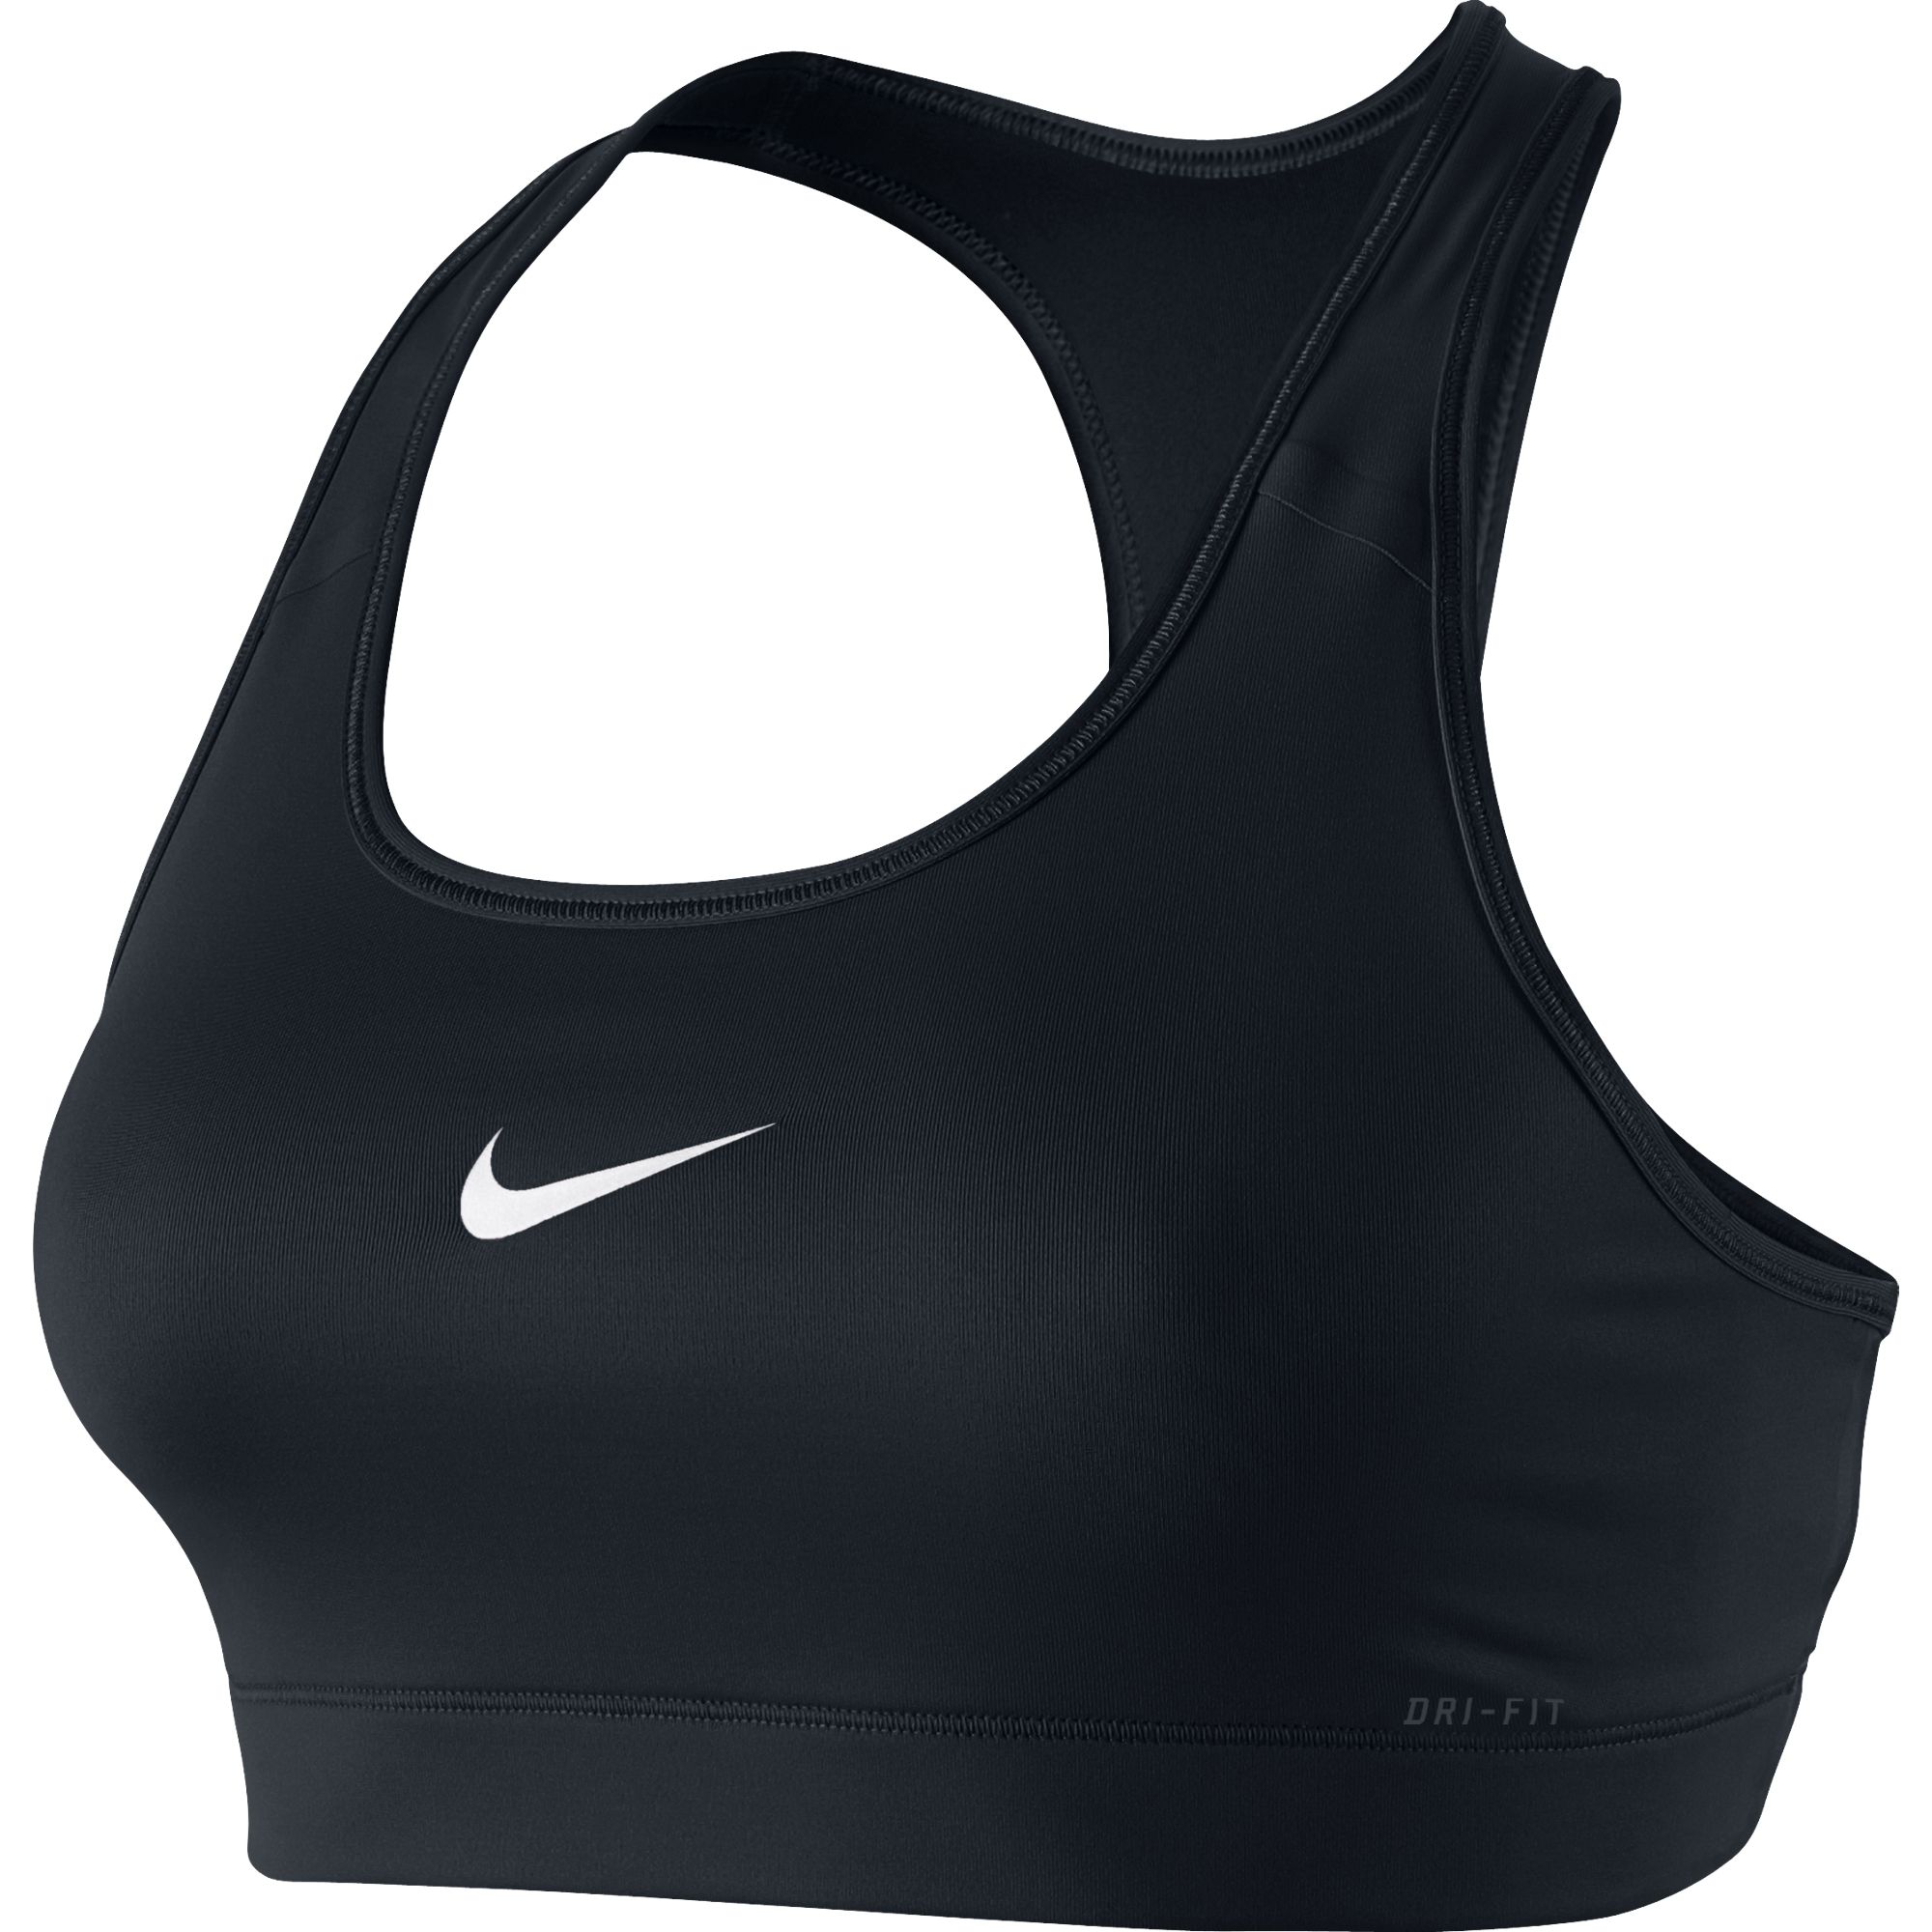 PRO BRA - Women's Sporty bra